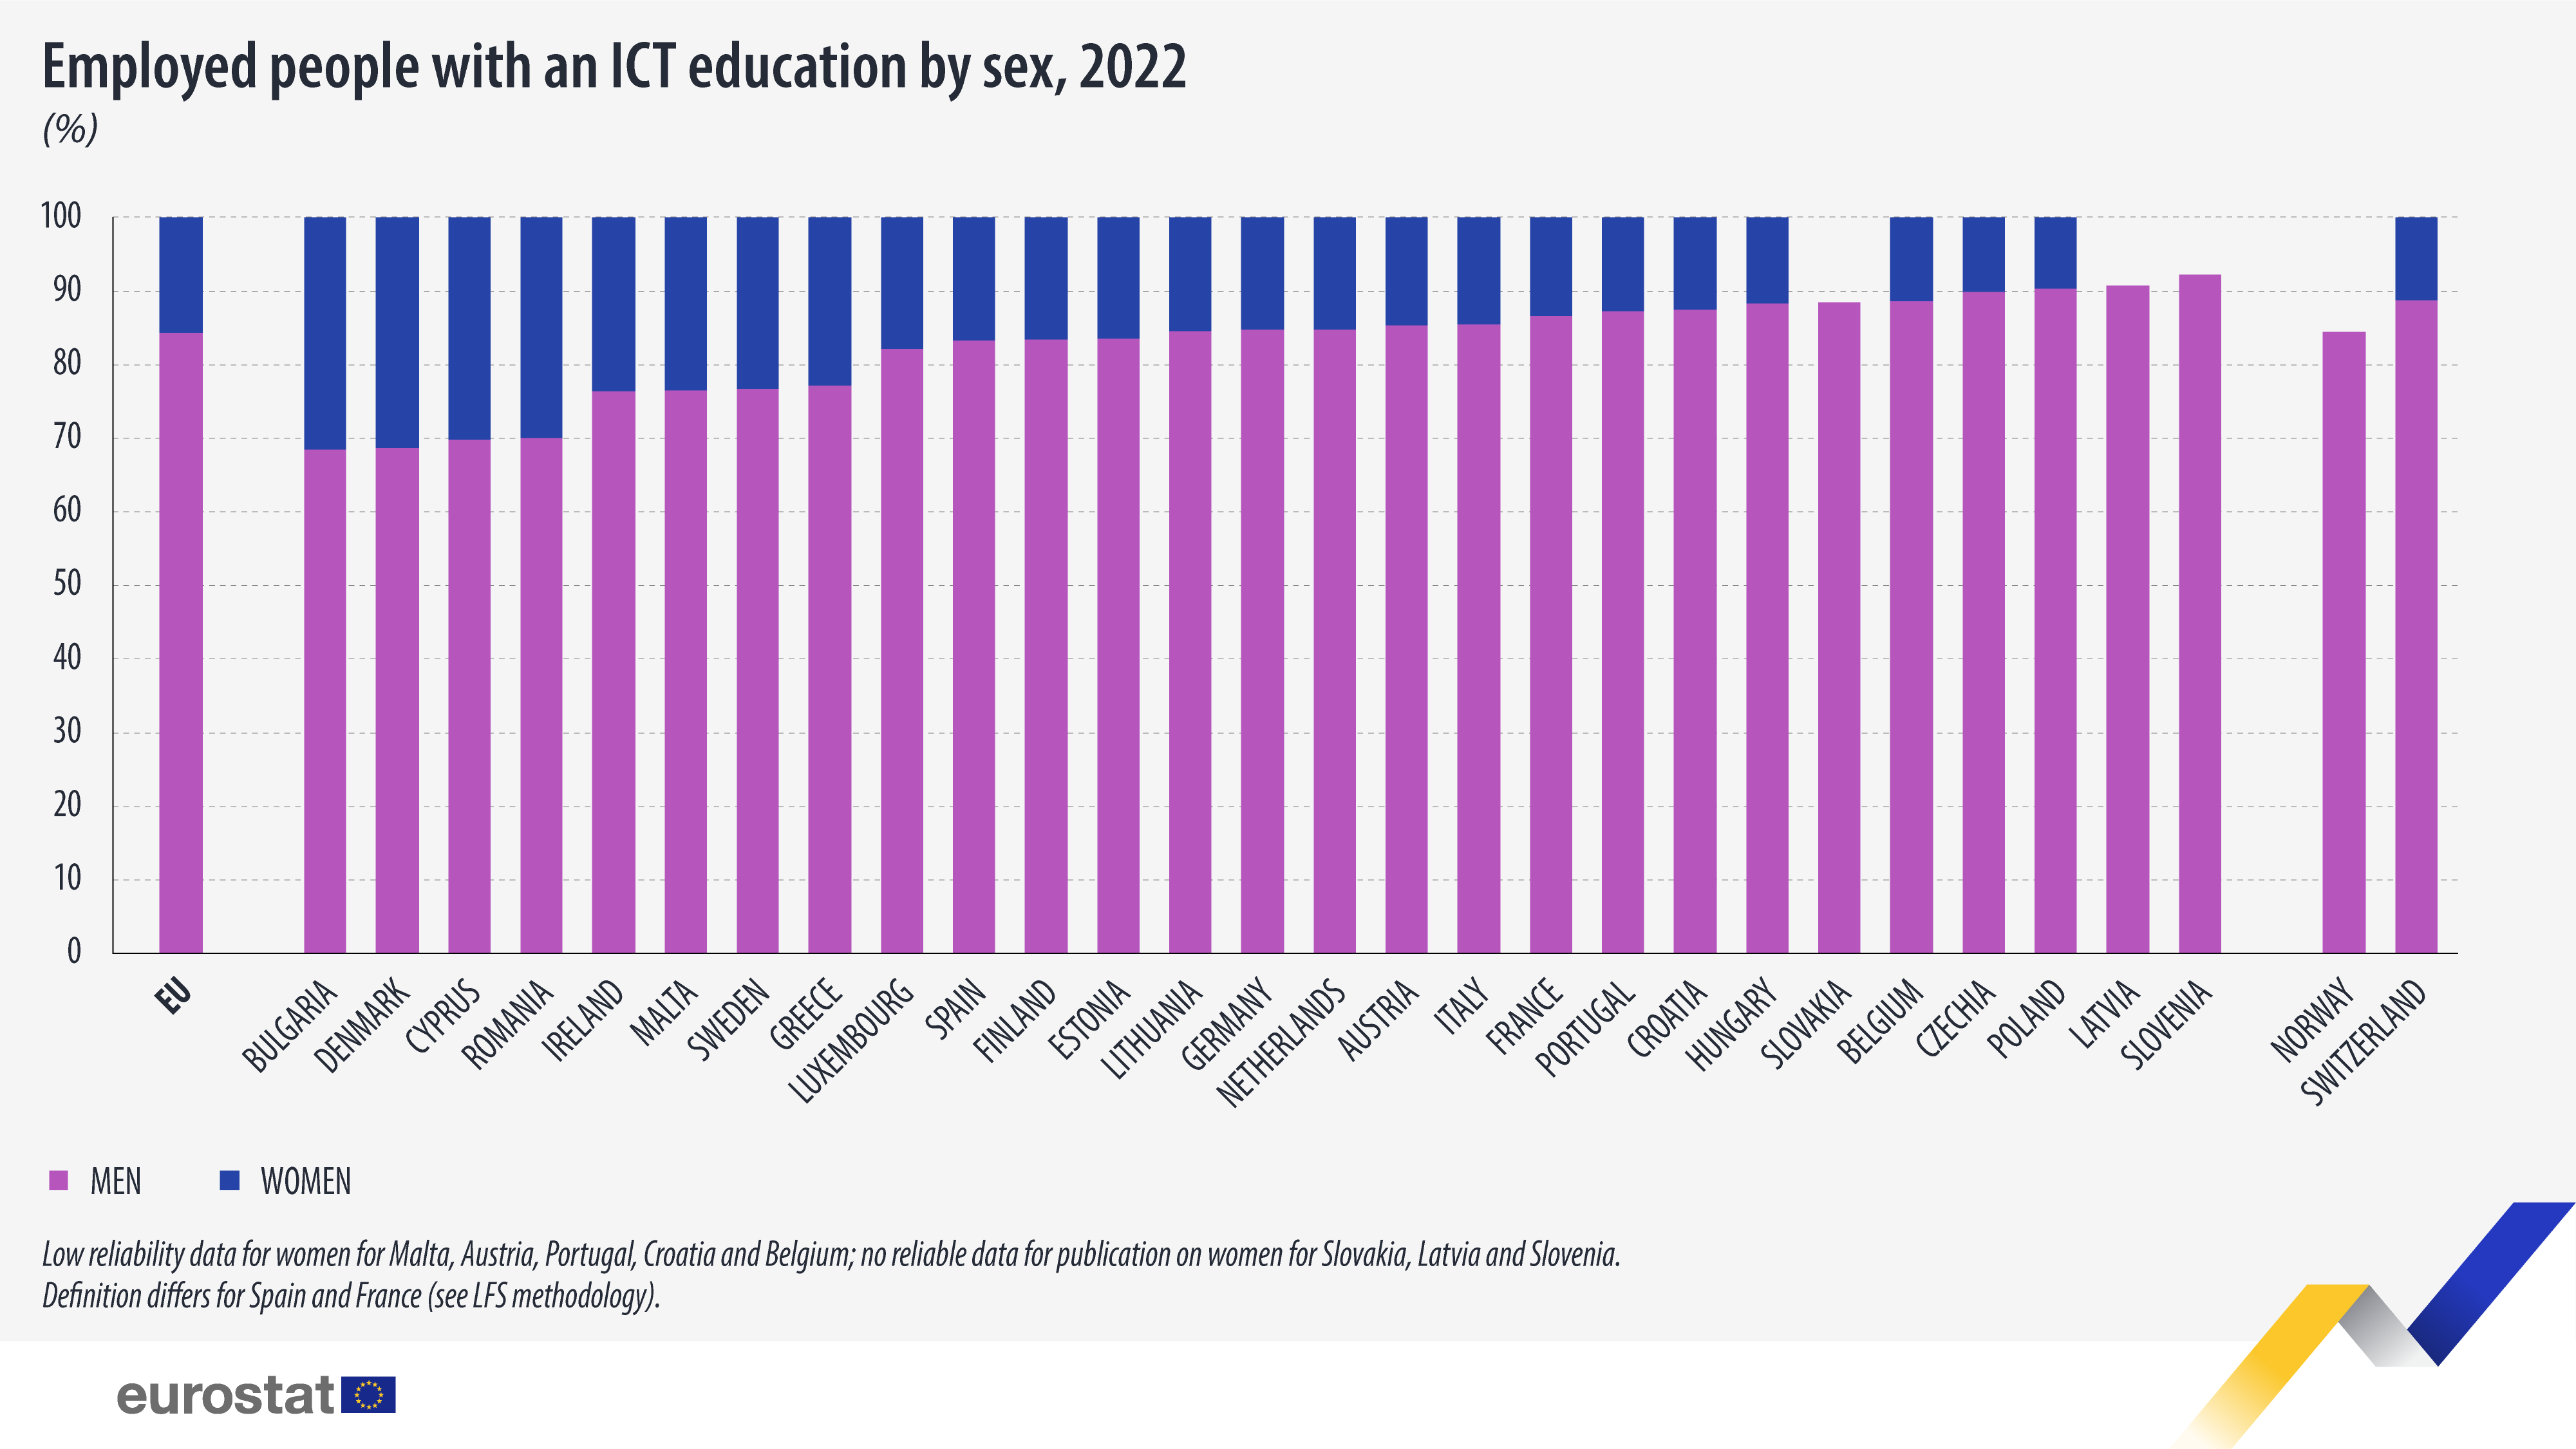 Balkendiagramm: Erwerbstätige mit einer IKT-Ausbildung nach Geschlecht, %, 2022